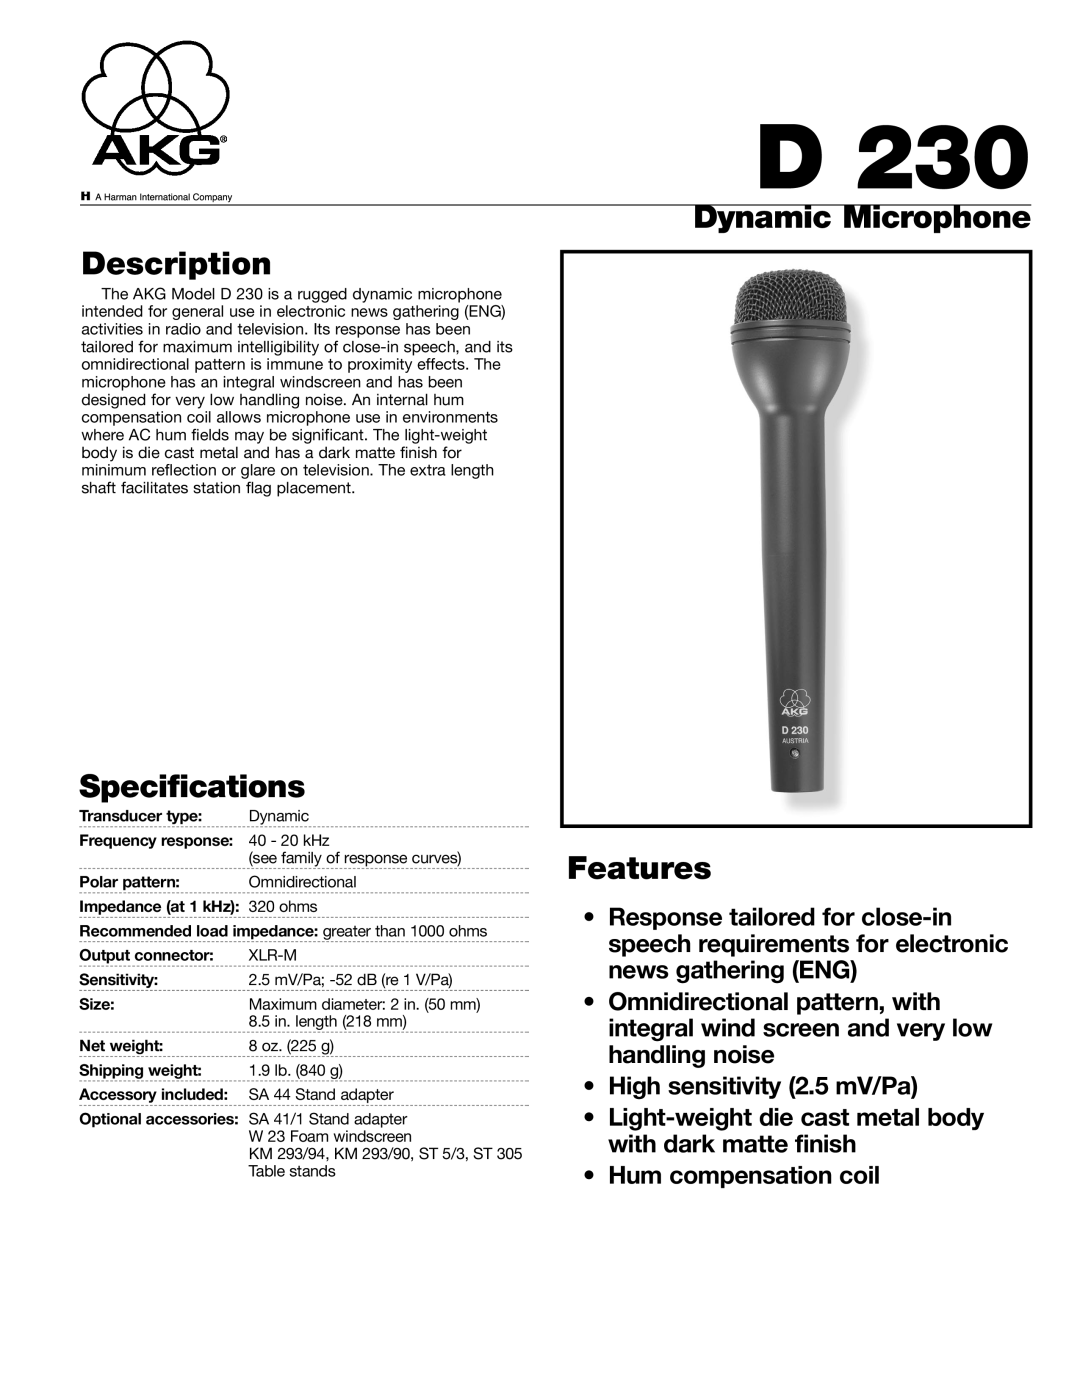 AKG Acoustics D230 specifications Description, Specifications, Dynamic Microphone Features 